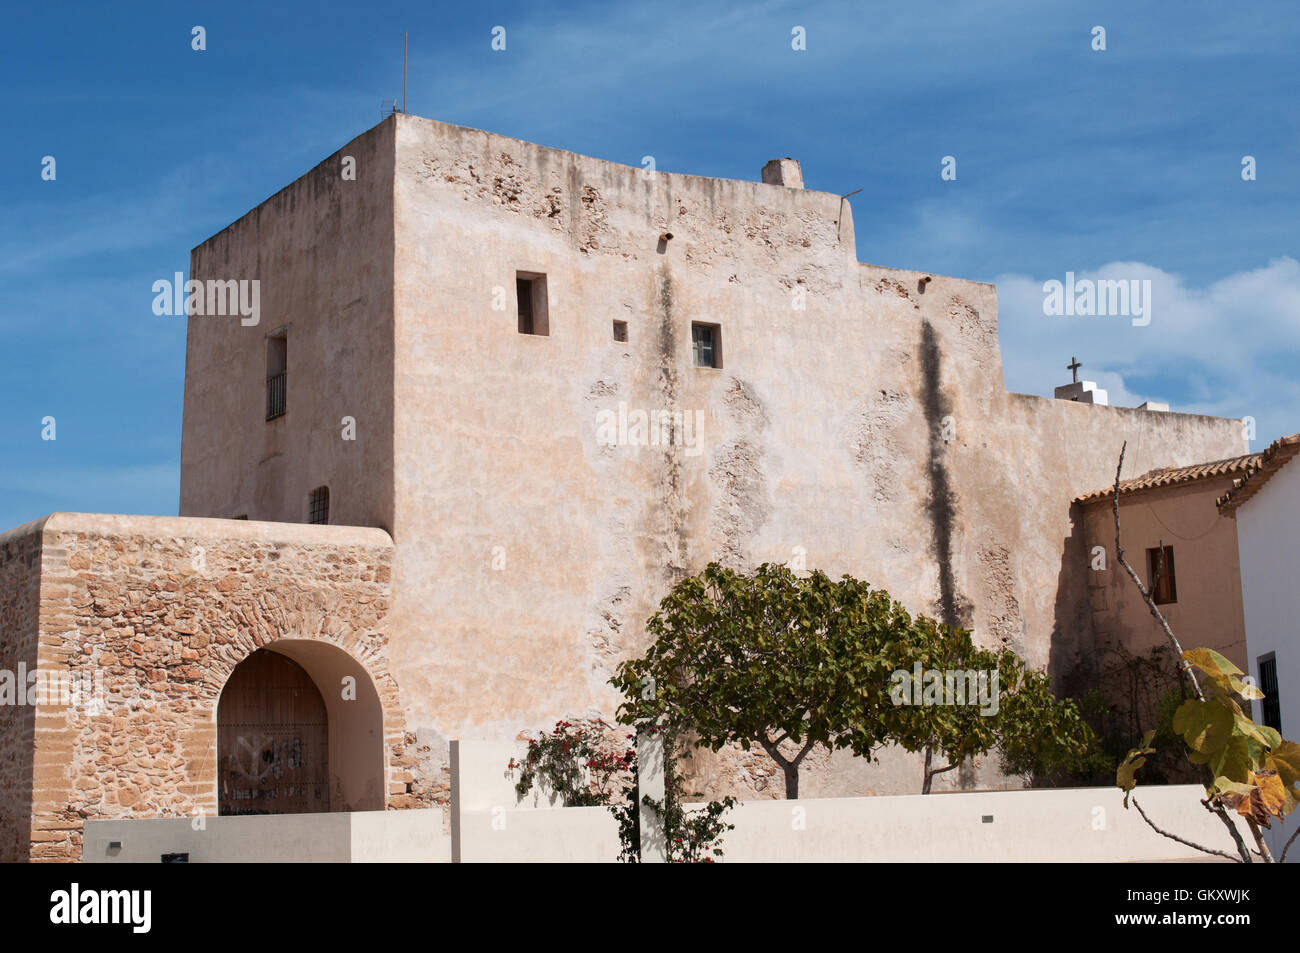 Îles Baléares, Formentera : l'architecture en pierre dans la région de Sant Francesc Xavier, la capitale de l'île Banque D'Images